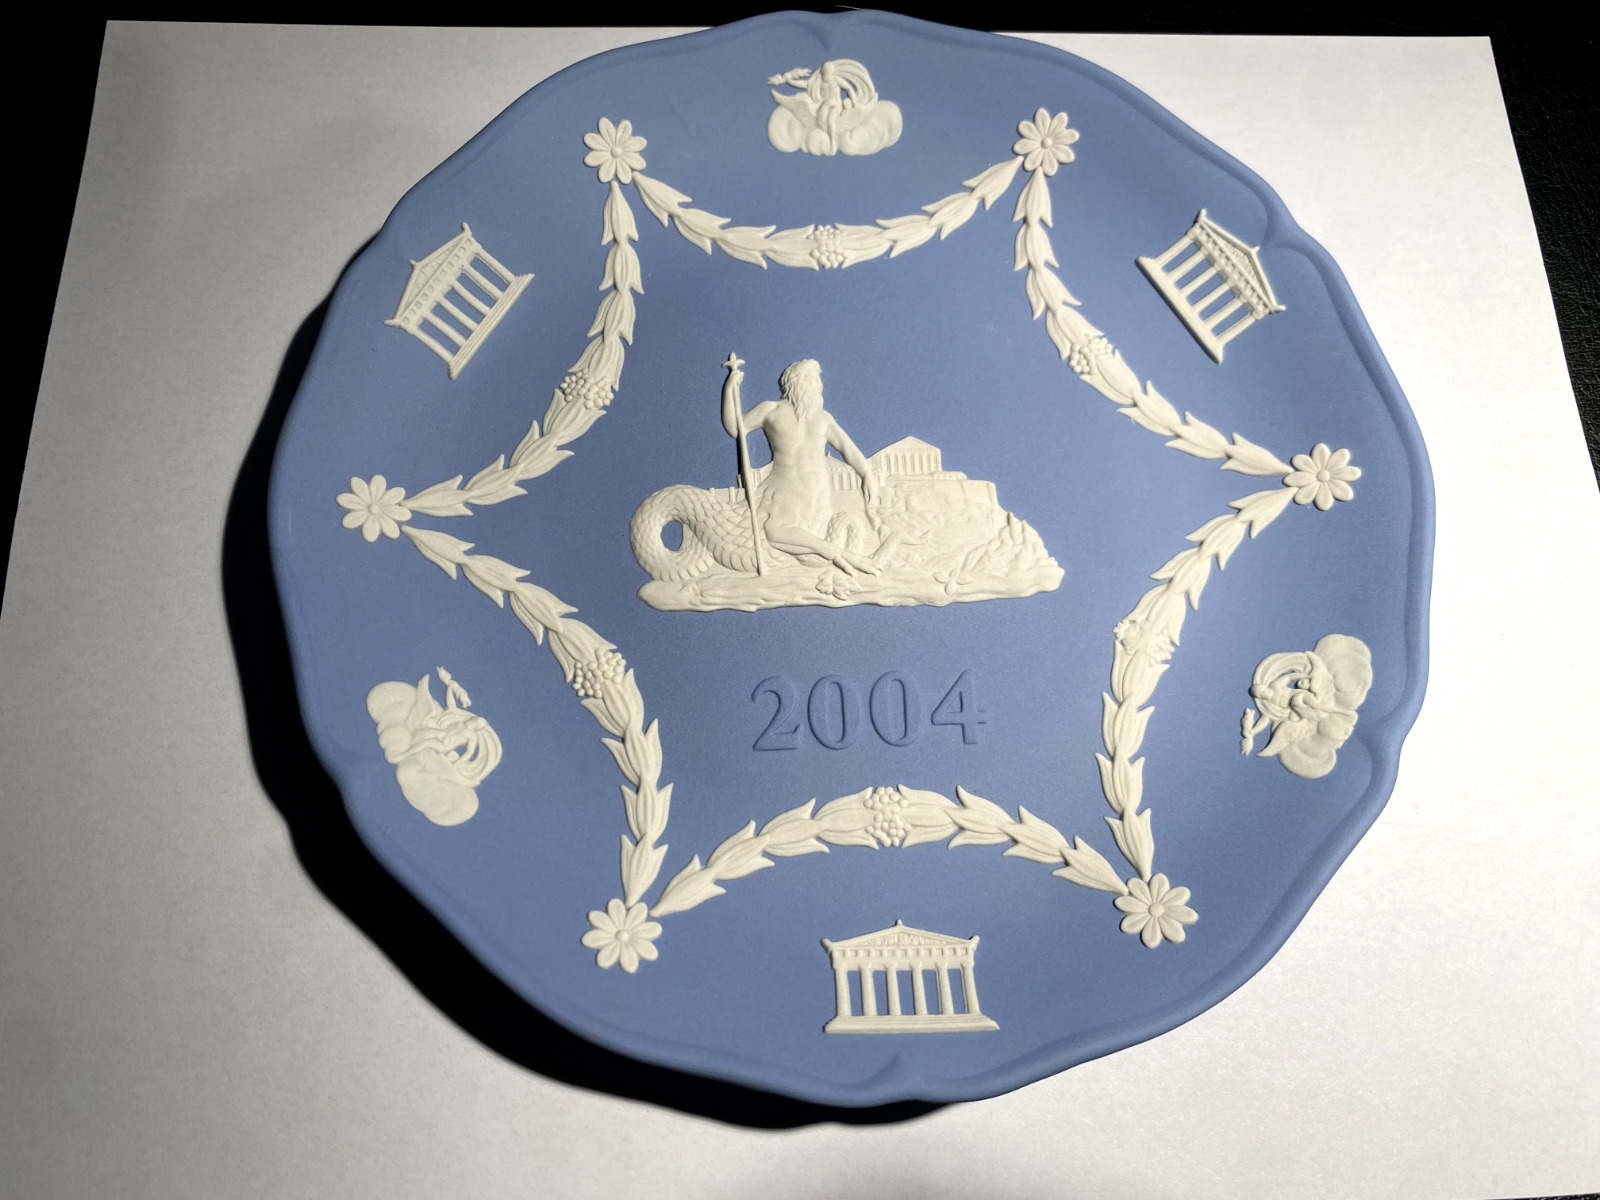 NEW - Wedgwood Jasperware Eto2004 Year Tray Plate